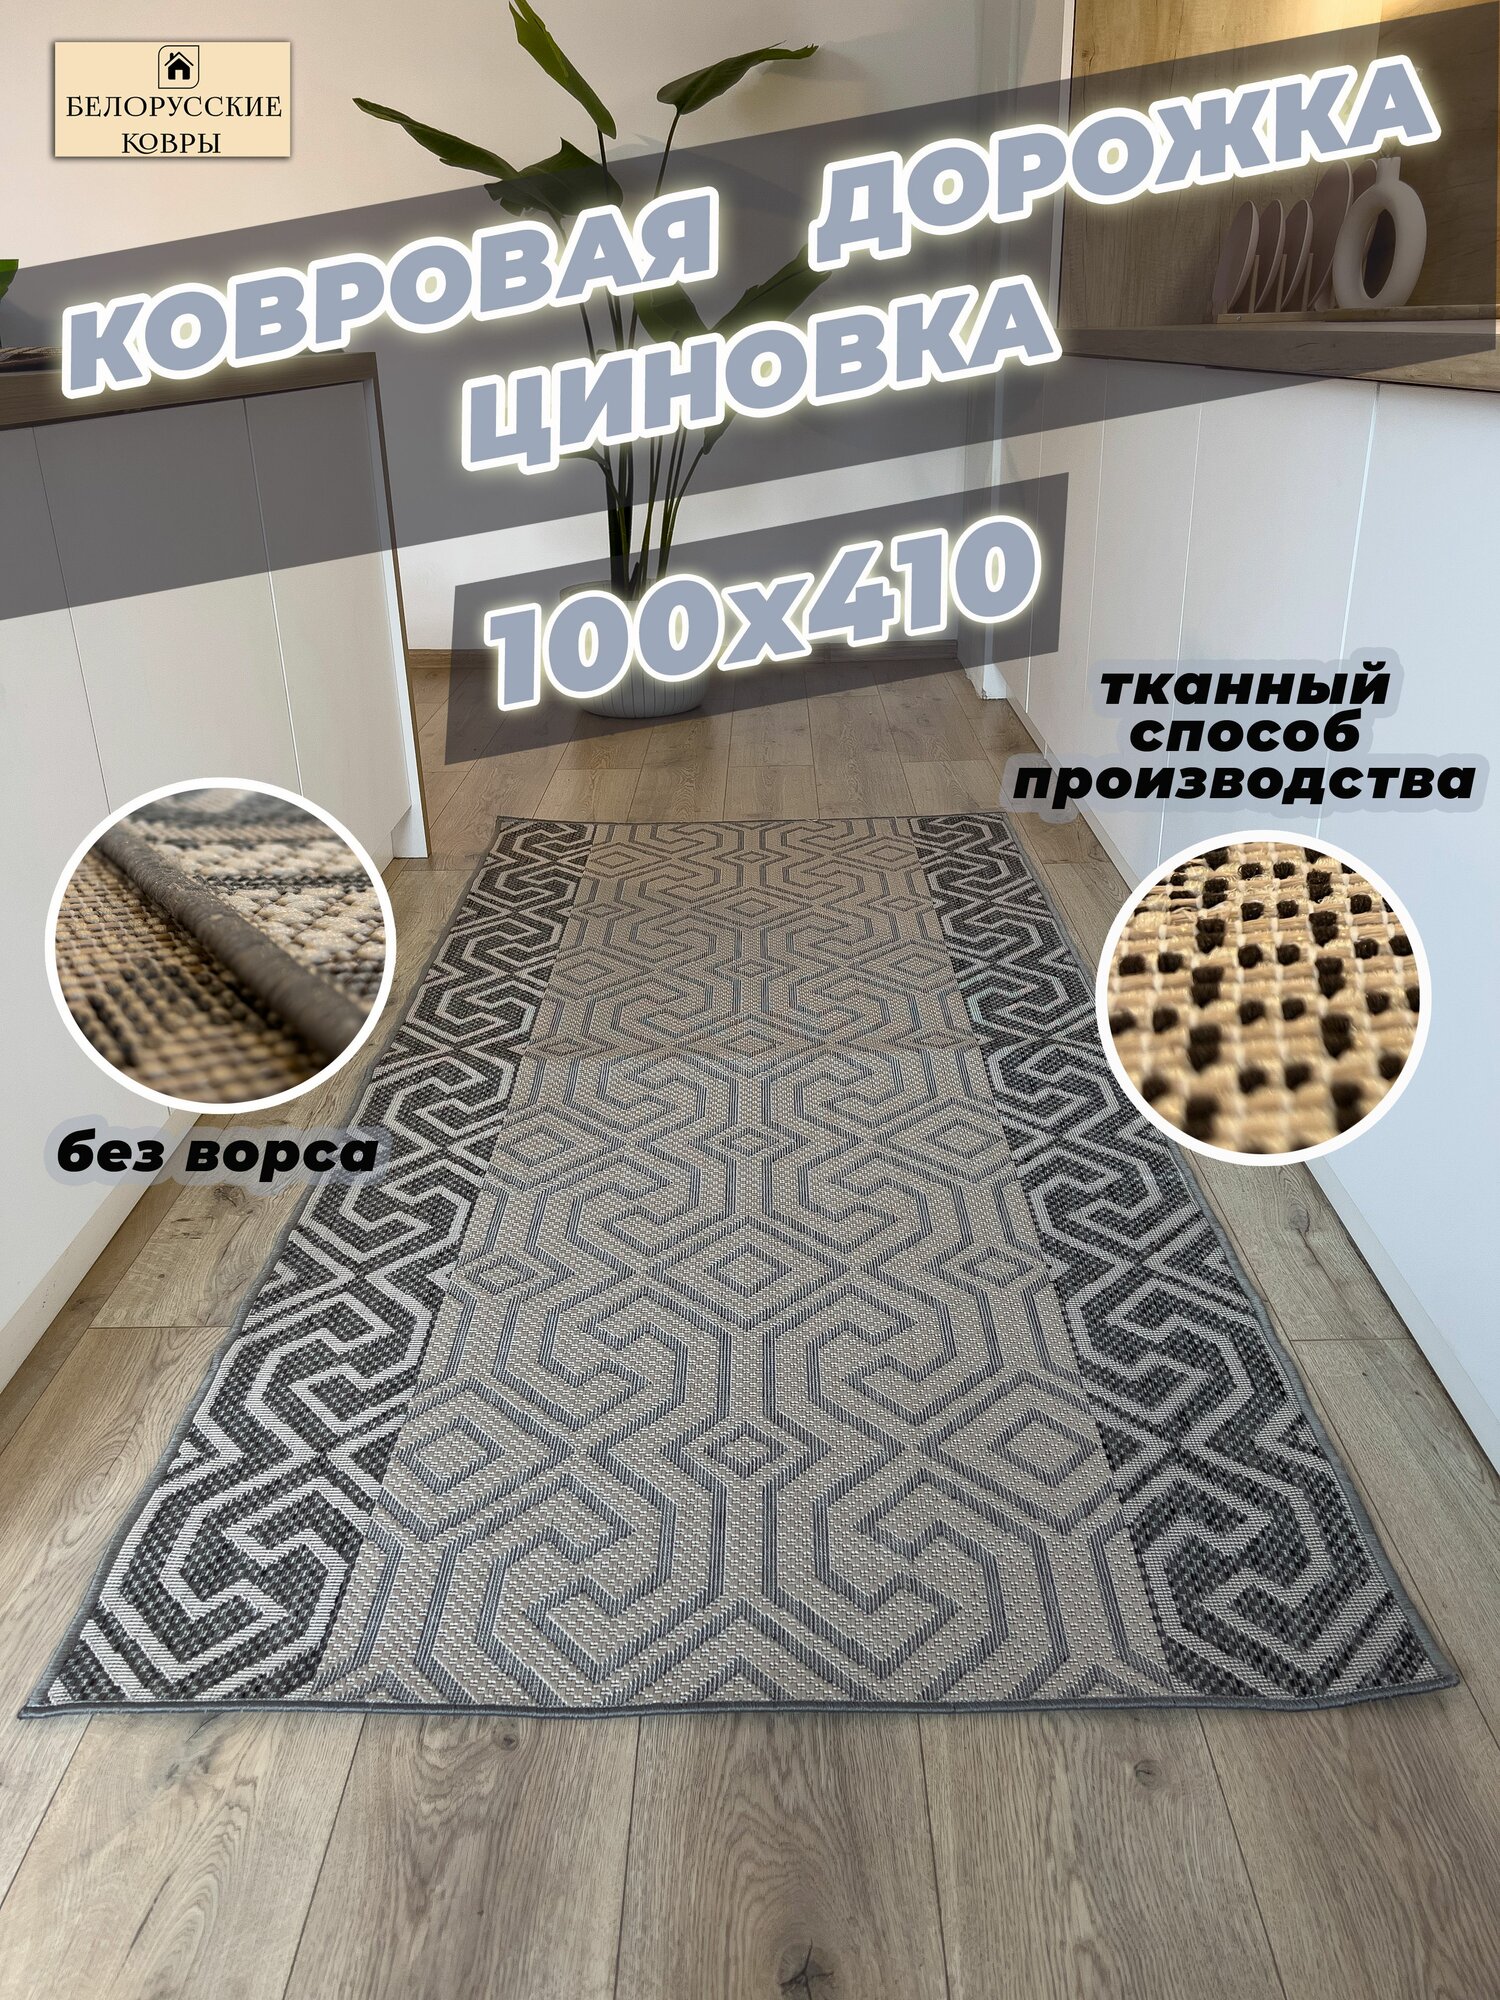 Белорусские ковры, ковровая дорожка циновка 100х410см./1,0х4,1м.